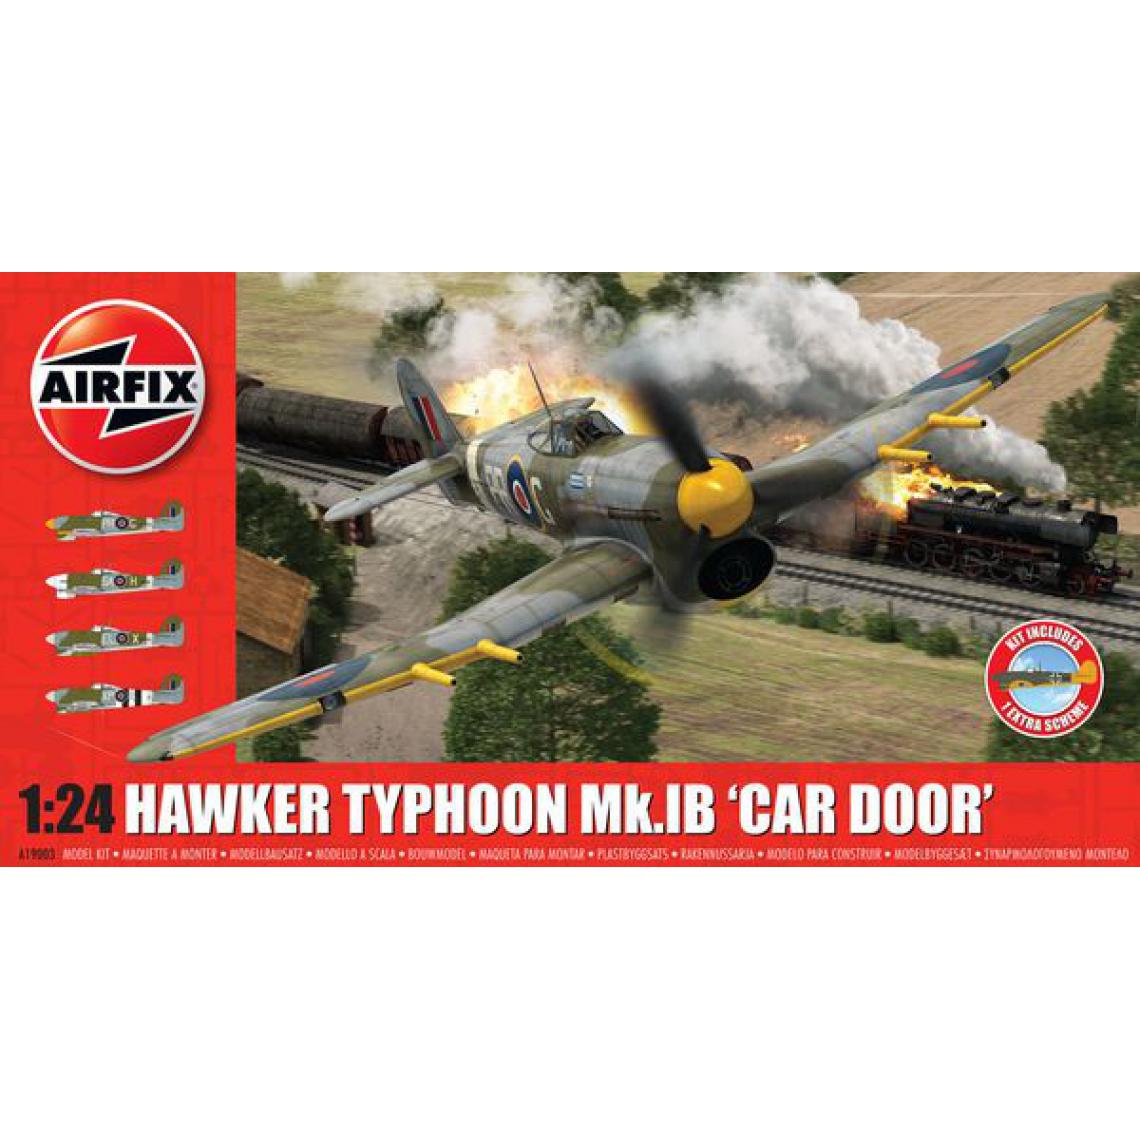 Airfix - Hawker Typhoon 1B-Car Door (plus extra Luftwaffe scheme)- 1:24e - Airfix - Avions RC